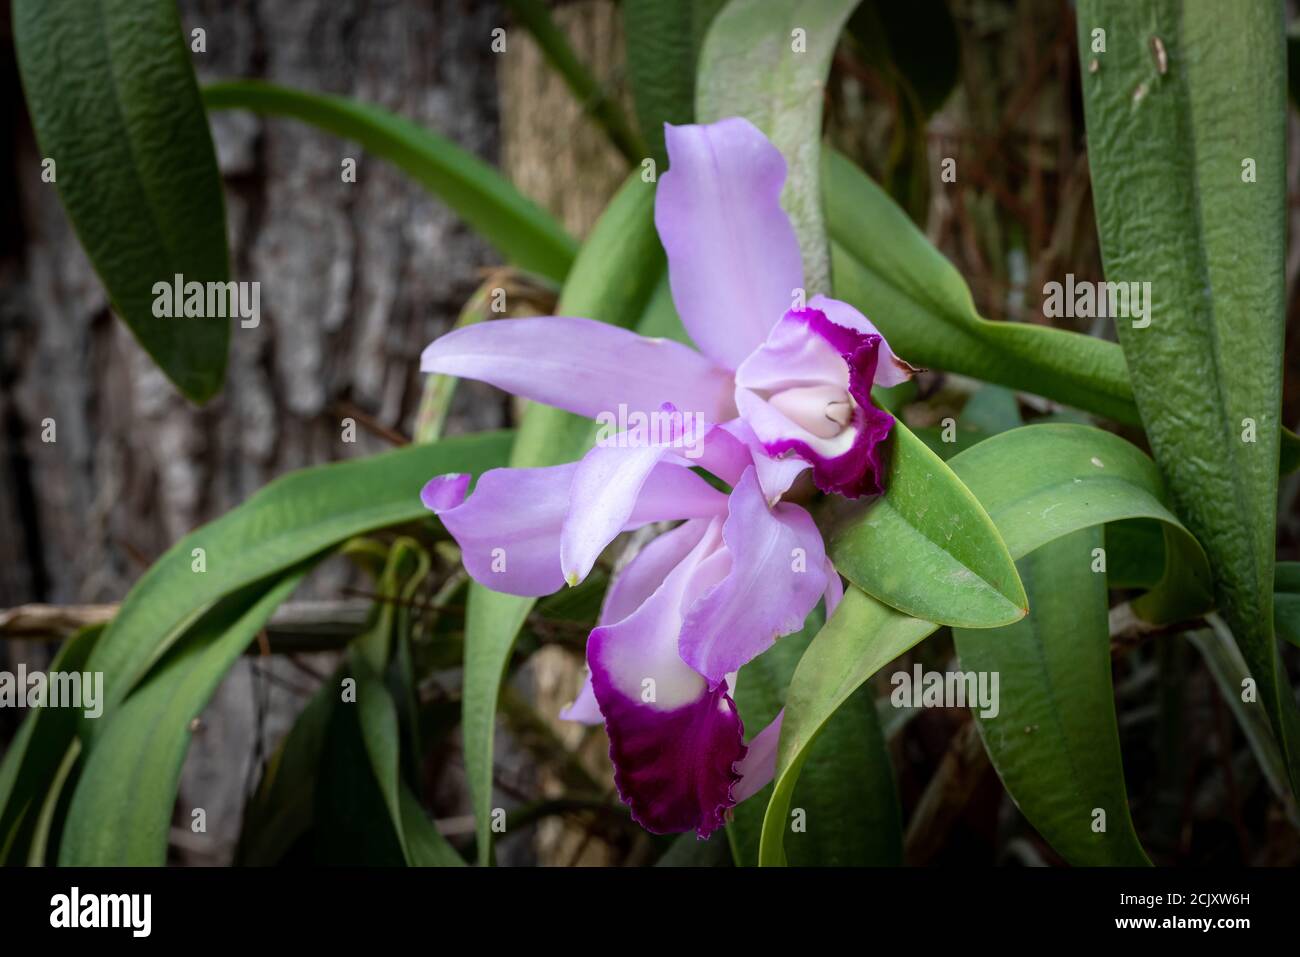 Orquidea natural de cultivo organico y de cuidado personal en un jardin hogareño Stock Photo